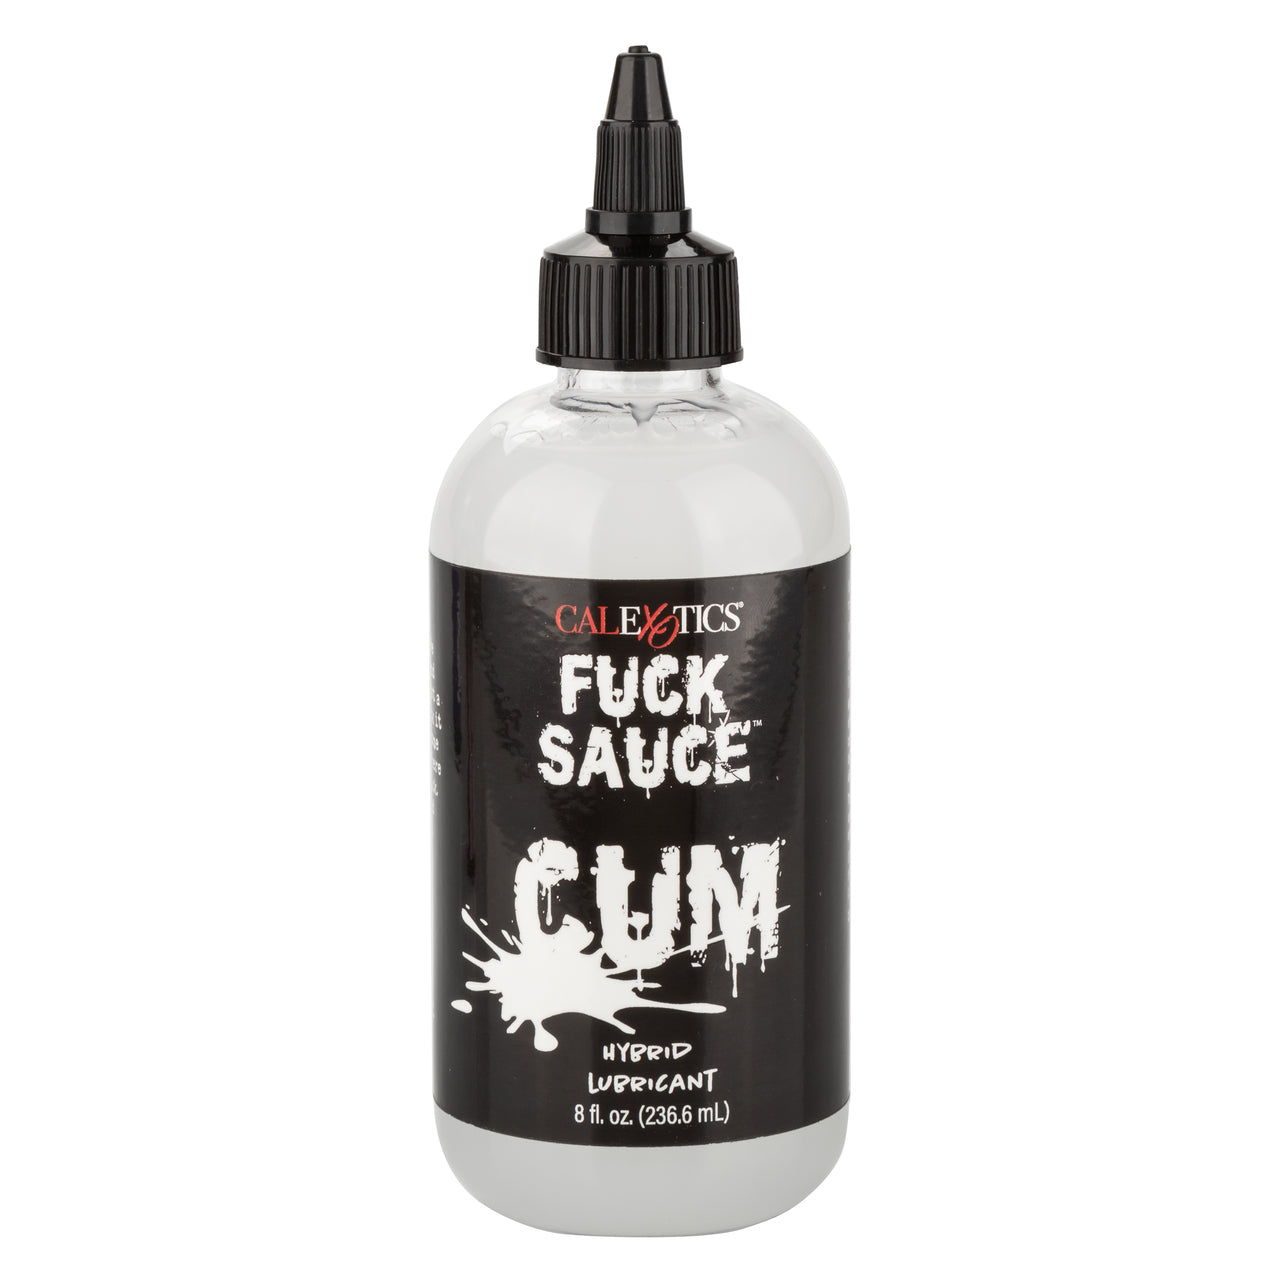 Fuck Sauce Cum Hybrid Lubricant - 8 fl. oz. - Thorn & Feather Sex Toy Canada